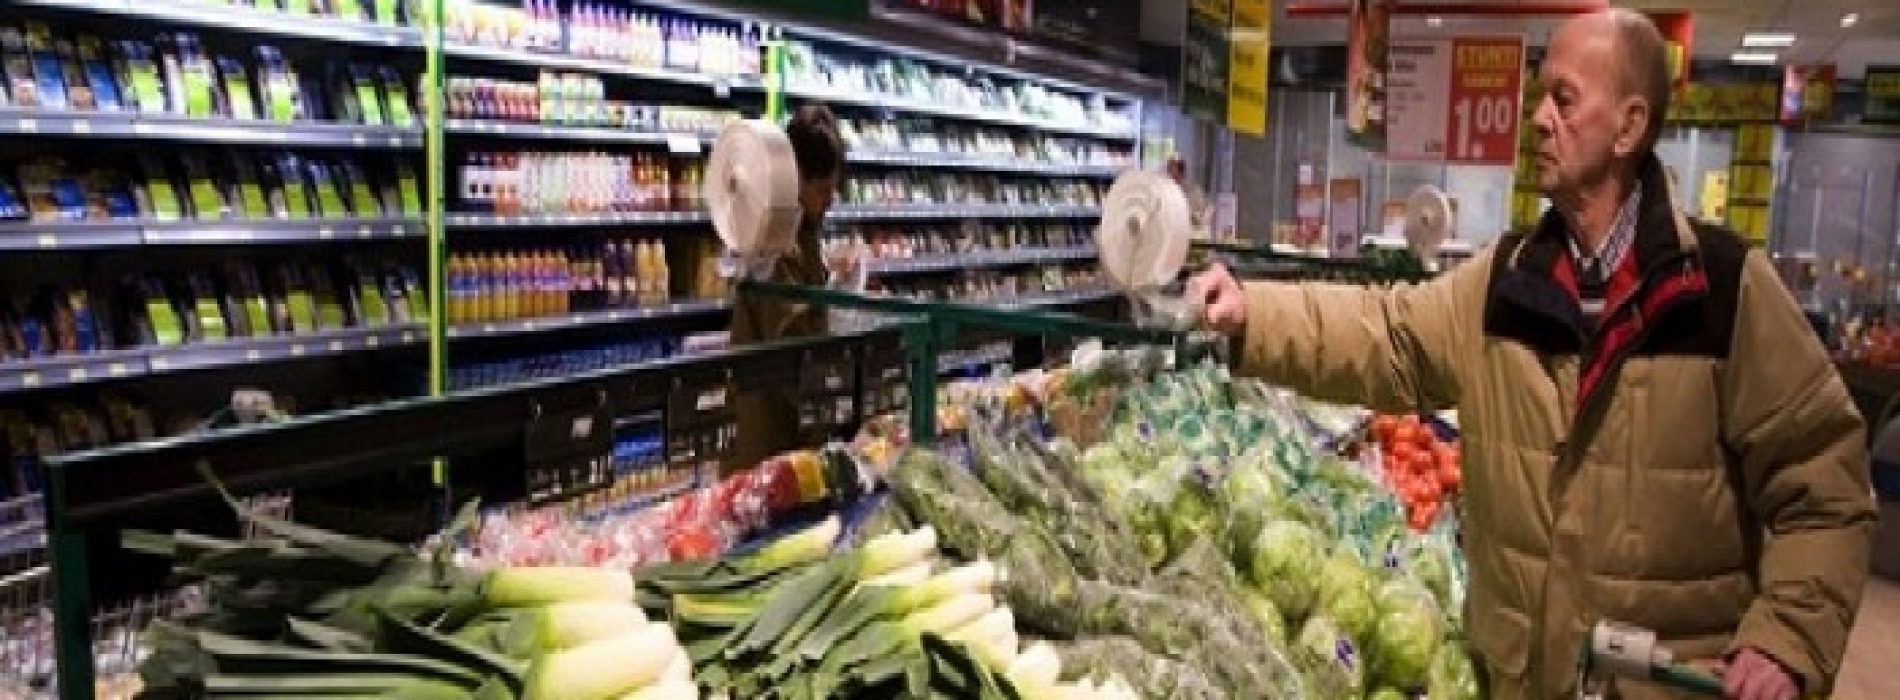 De lage prijs die je voor voedsel betaalt is een illusie: “We worden wereldwijd misleid”